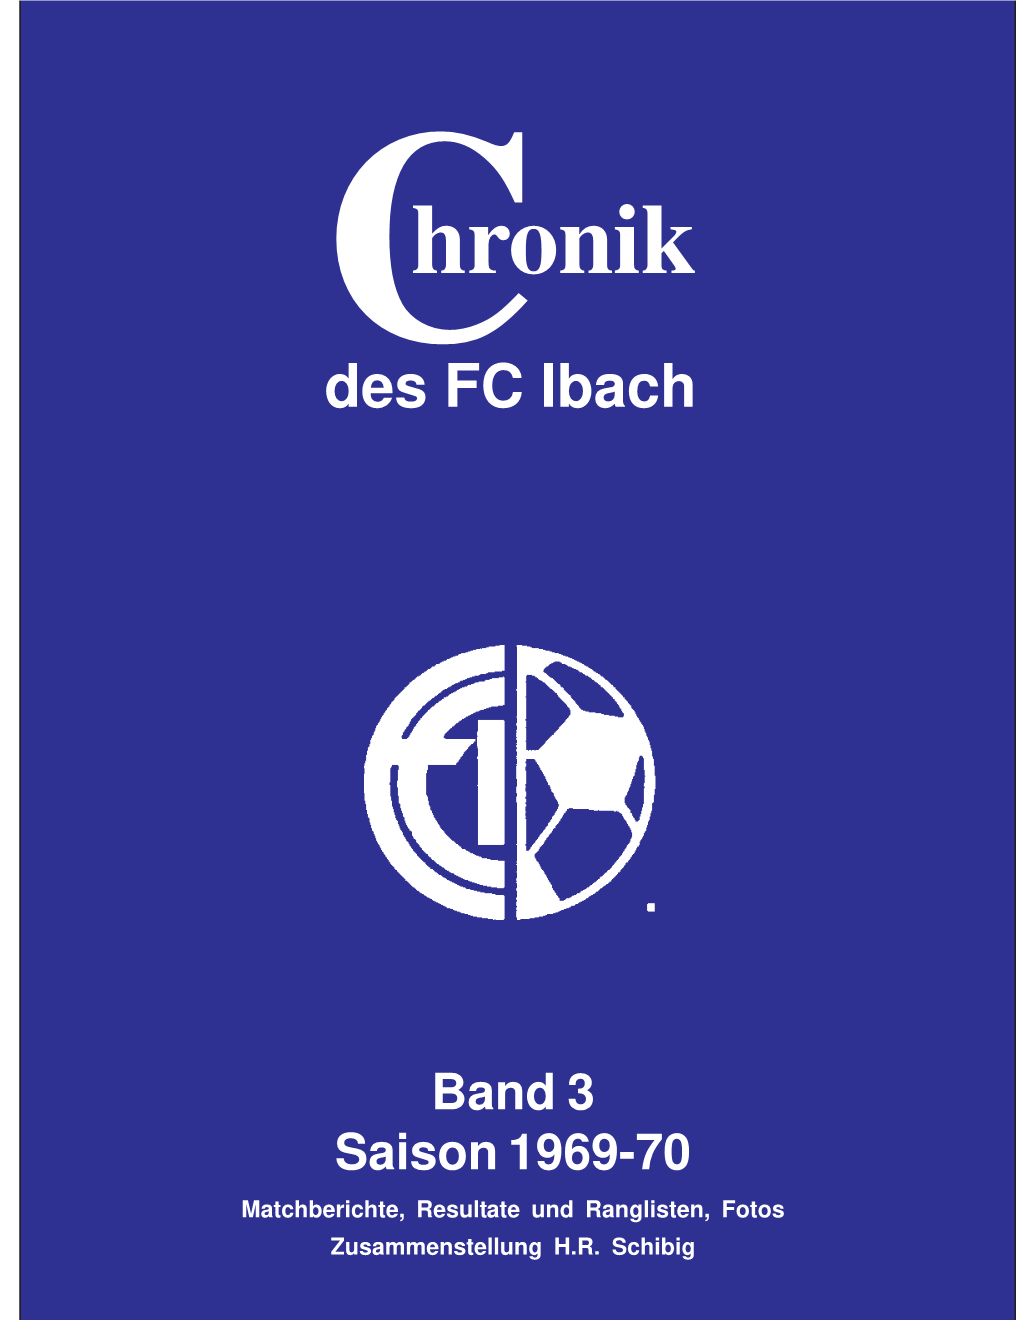 Chronik Saison 1969-70